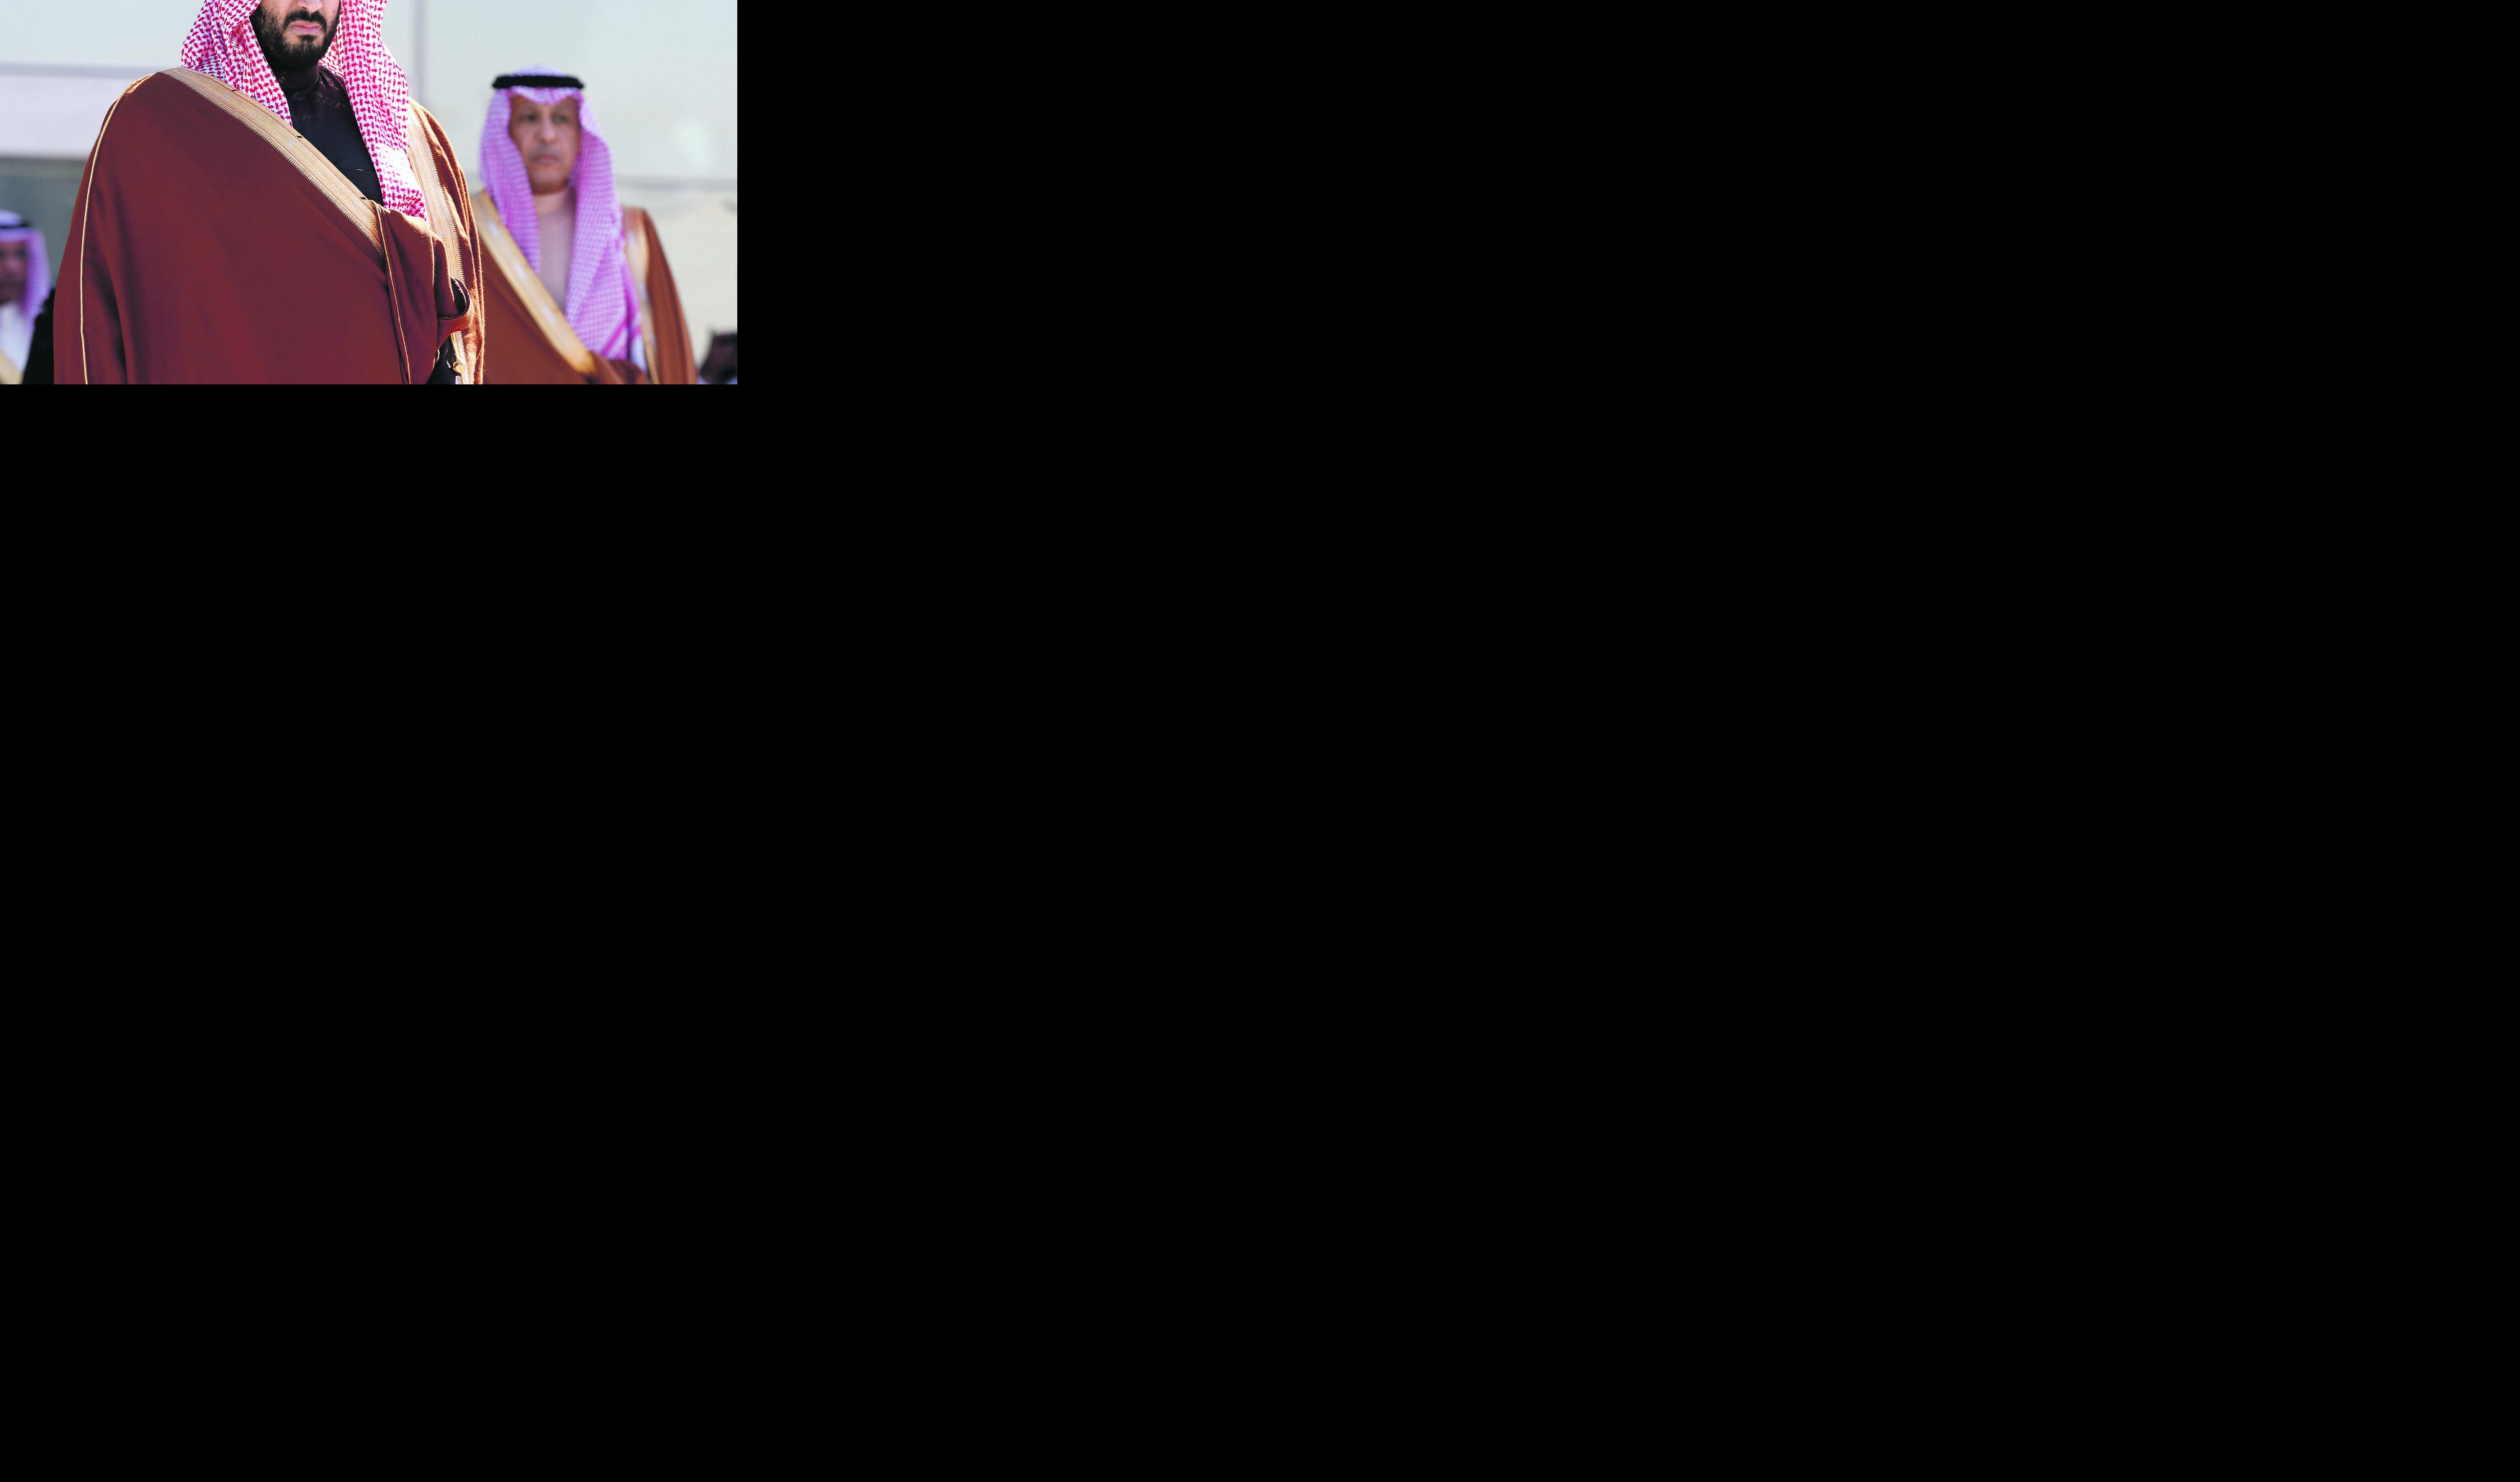 PRINC MUHAMED POSLAO 15 UBICA NA NOVINARA! Saudijci stoje iza ubistva reportera "Vašington posta"!